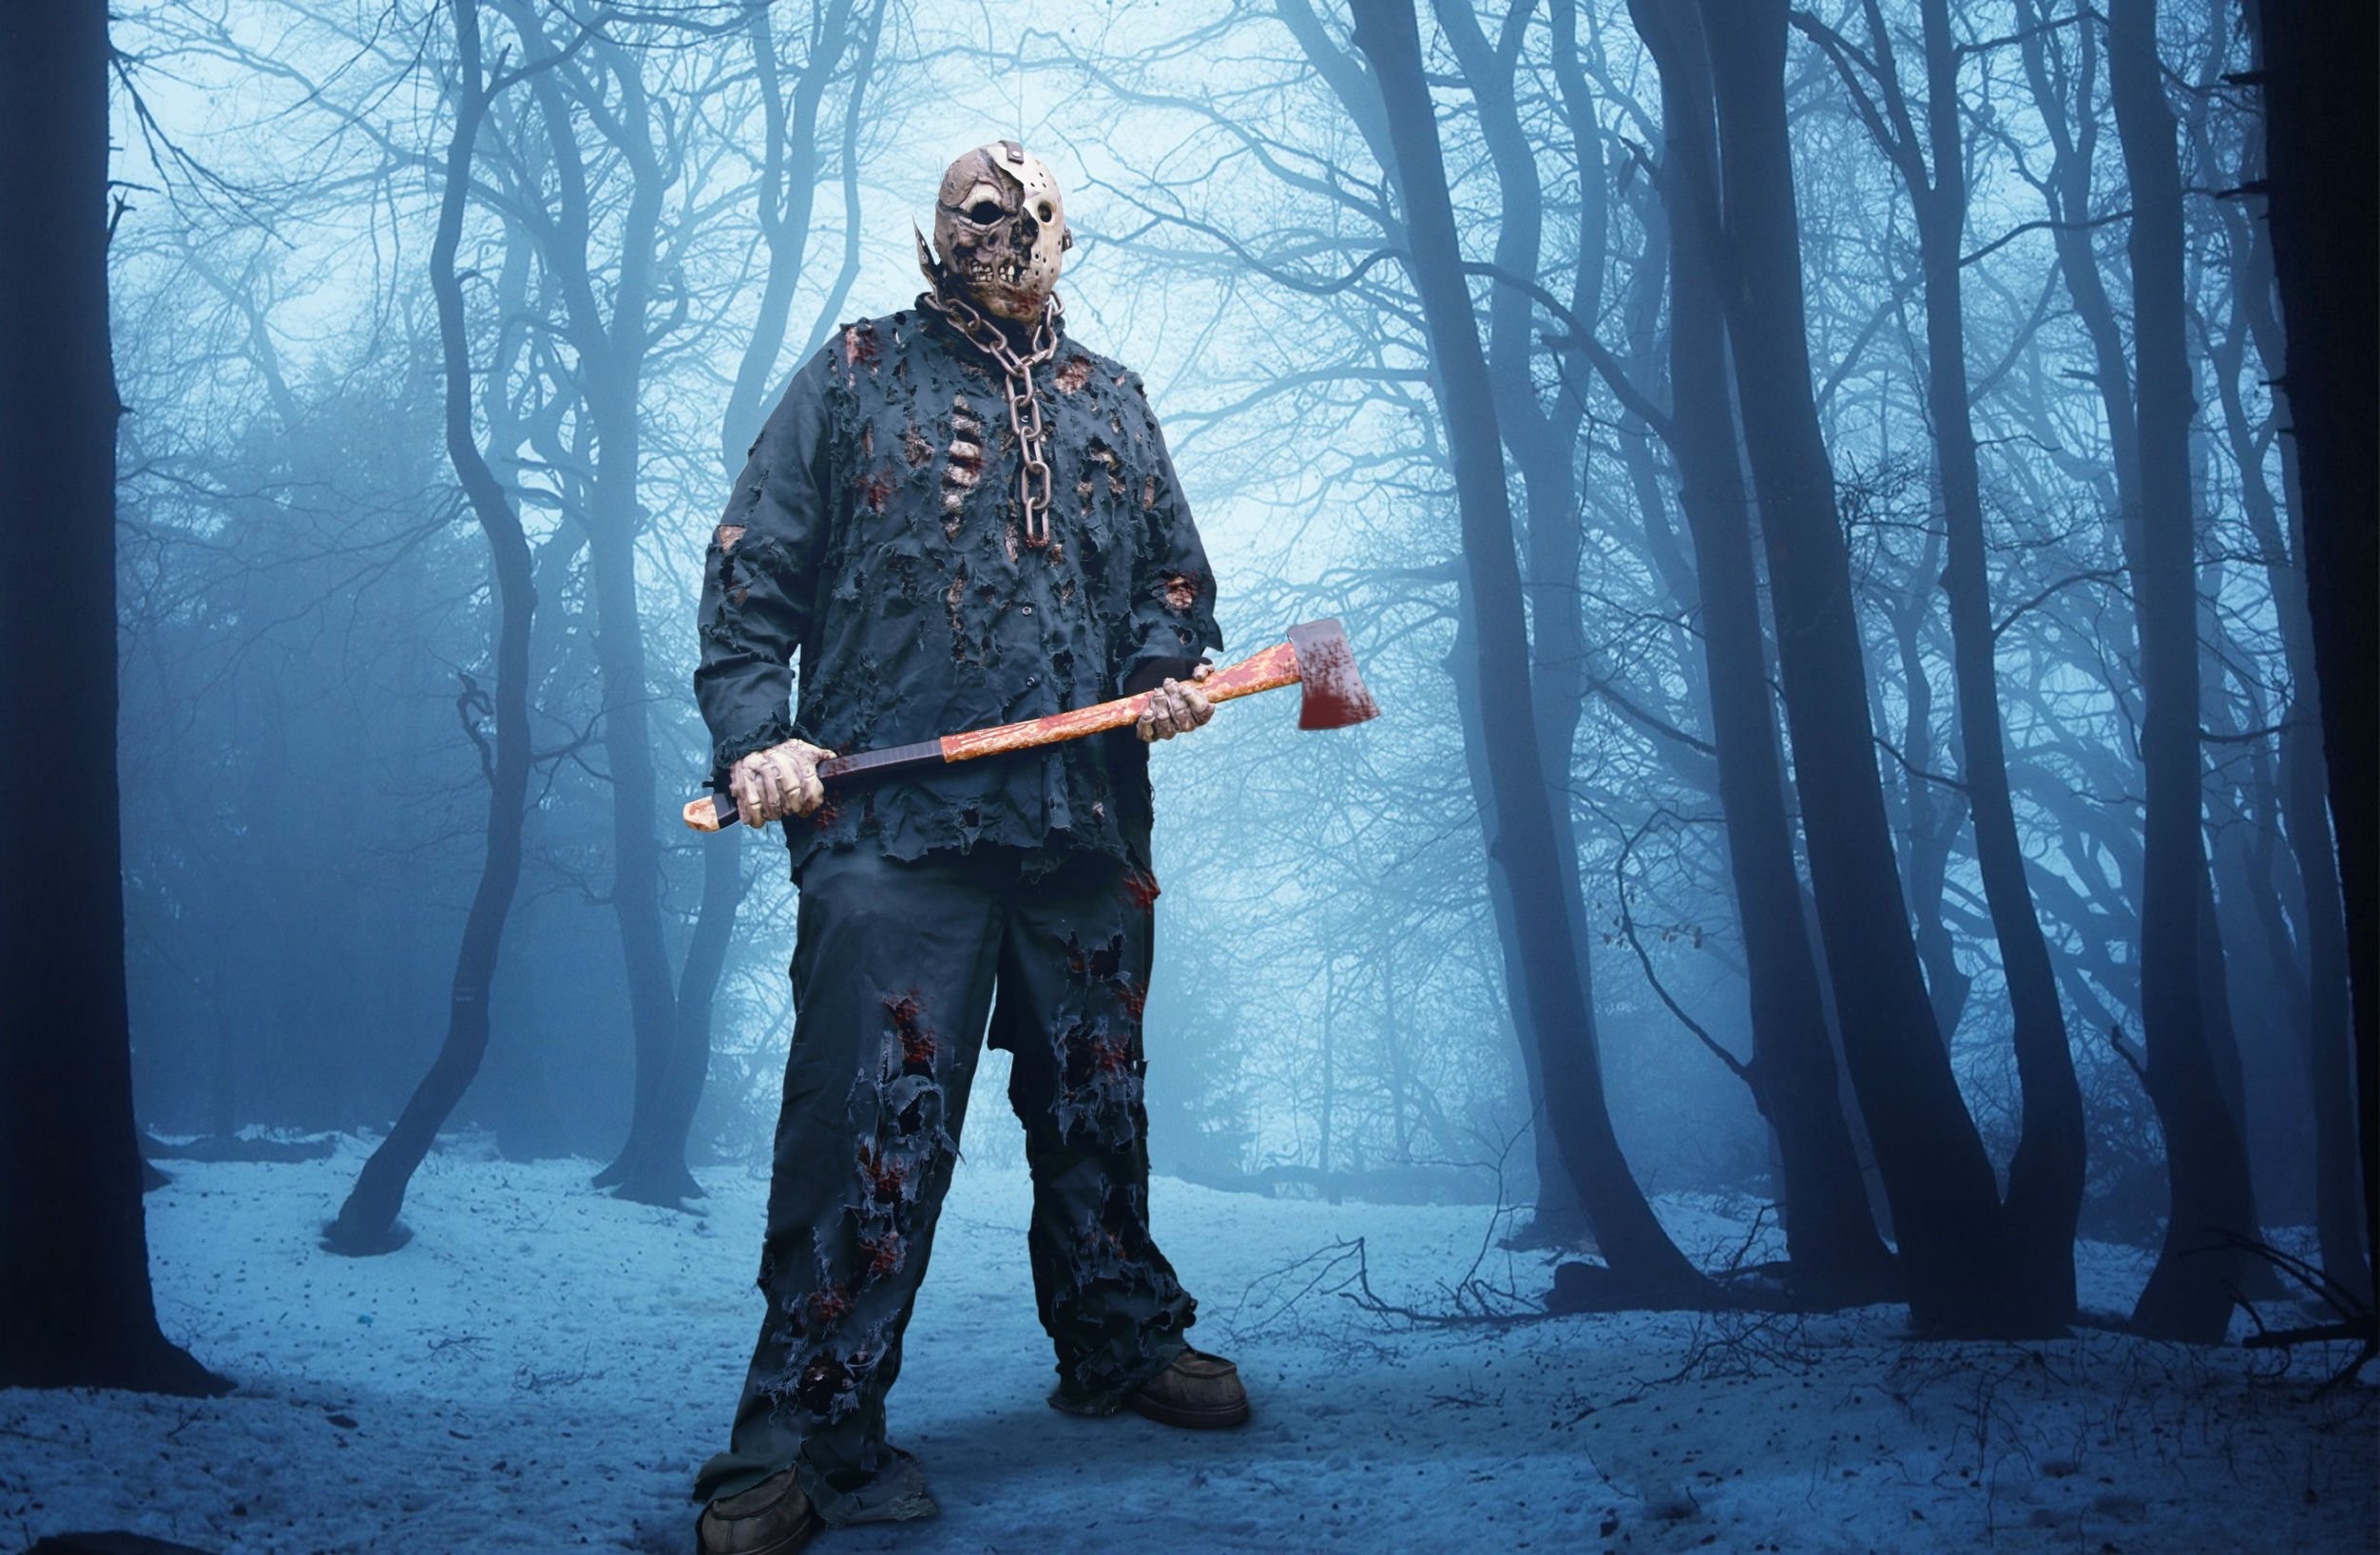 2504x1636 FRIDAY 13TH dark horror violence killer jason thriller fridayhorror  halloween mask wallpaper |  | 604236 | WallpaperUP